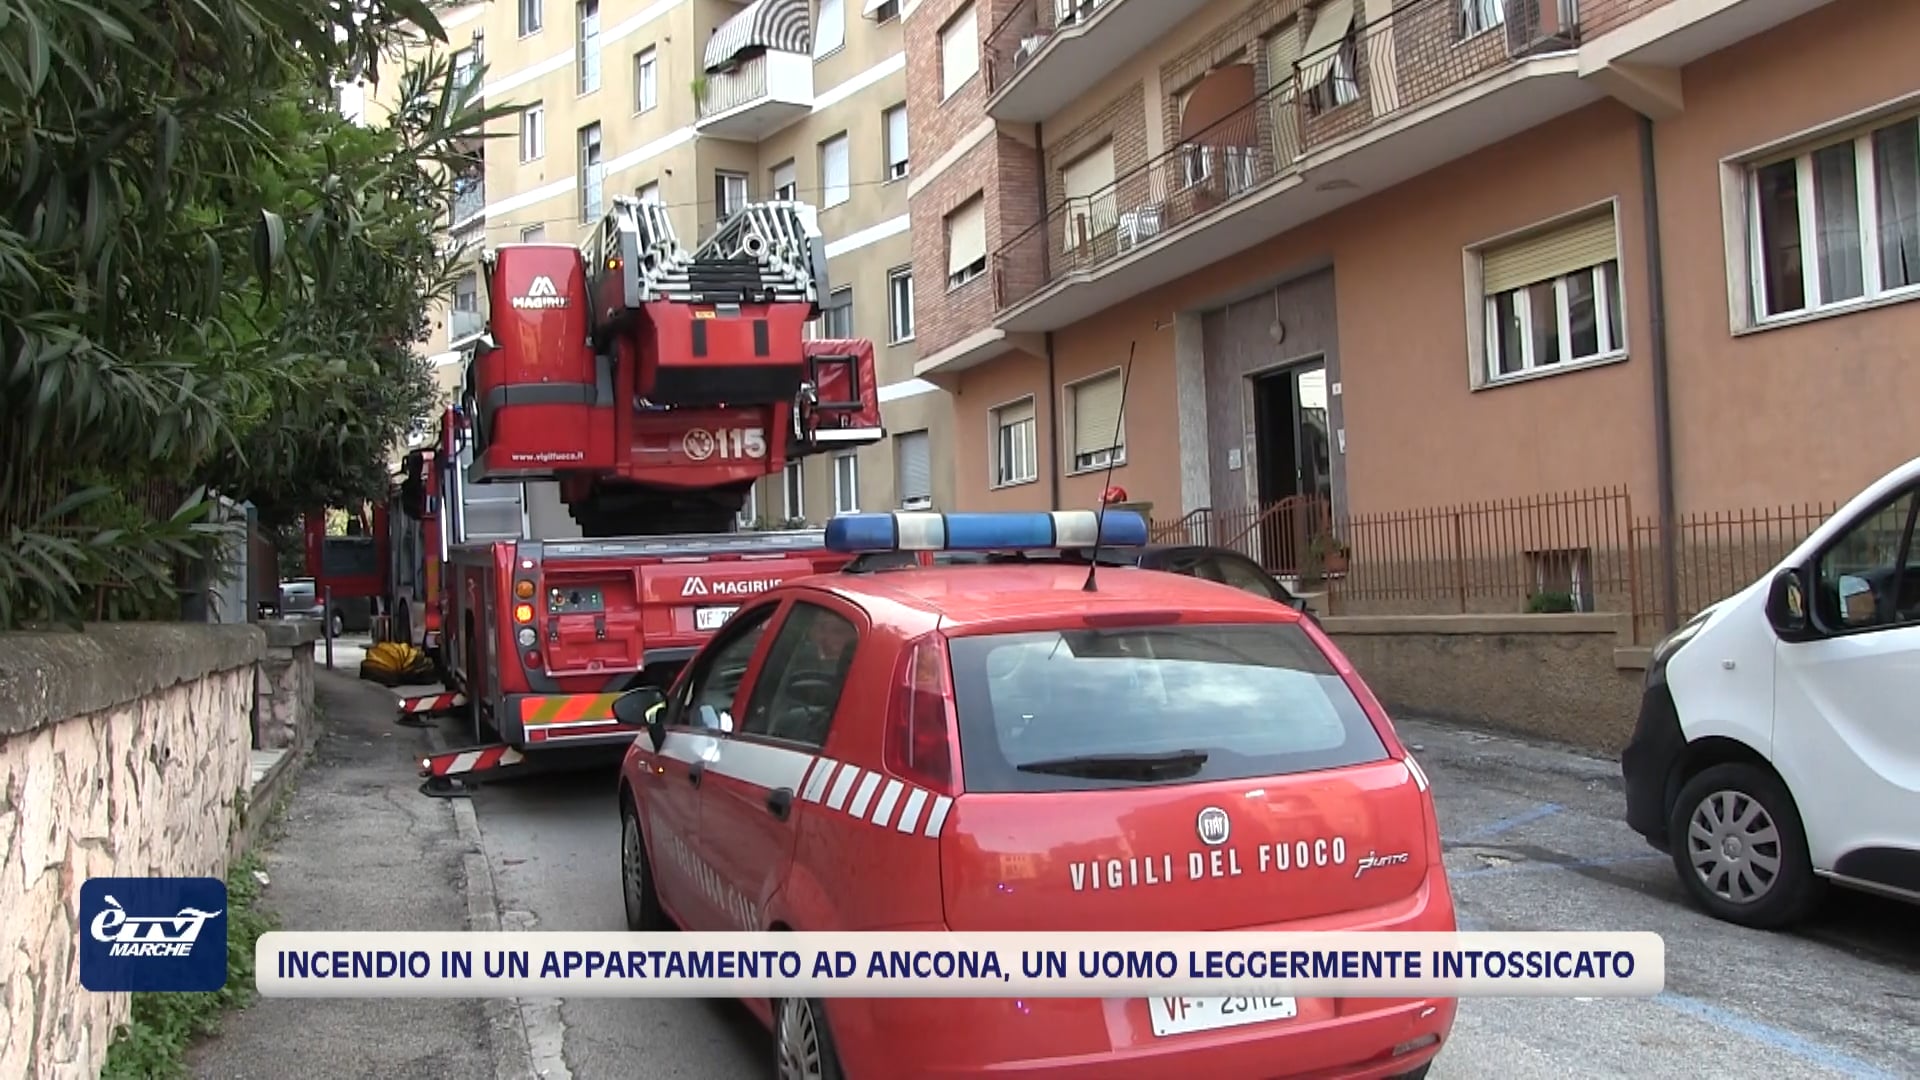 Incendio in un appartamento ad Ancona. Un uomo intossicato - VIDEO